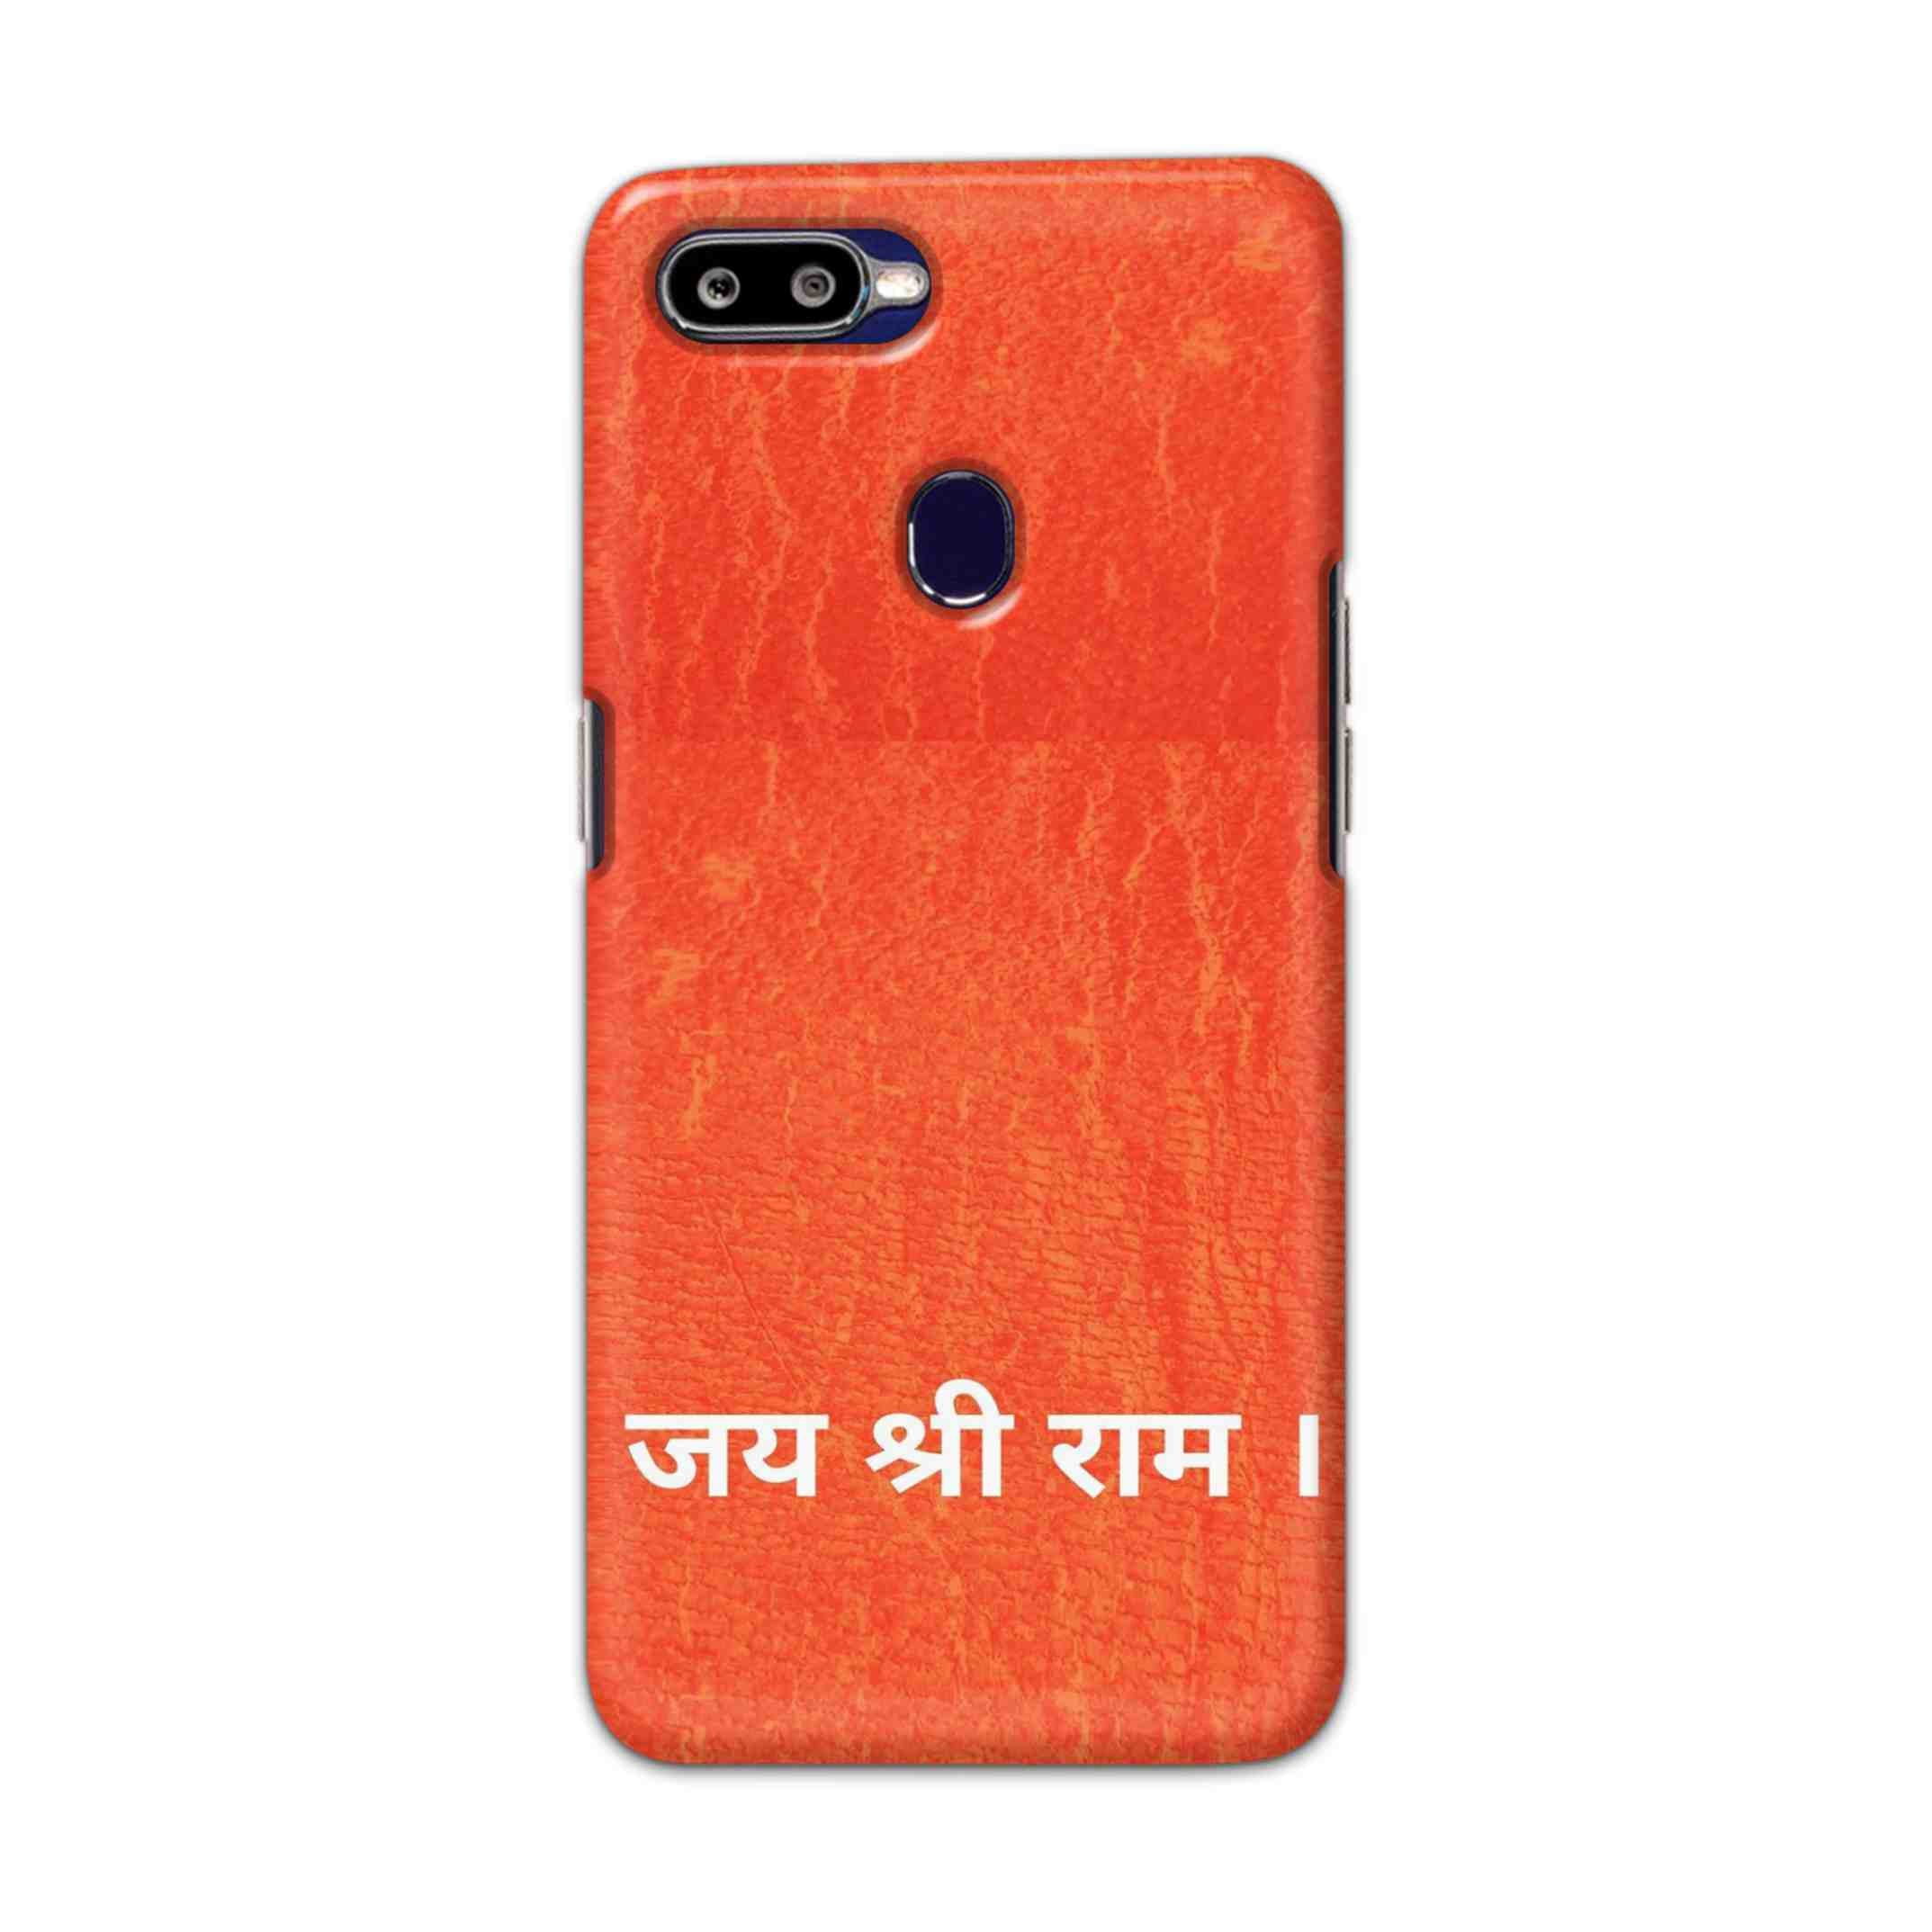 Buy Jai Shree Ram Hard Back Mobile Phone Case/Cover For Oppo F9 / F9 Pro Online